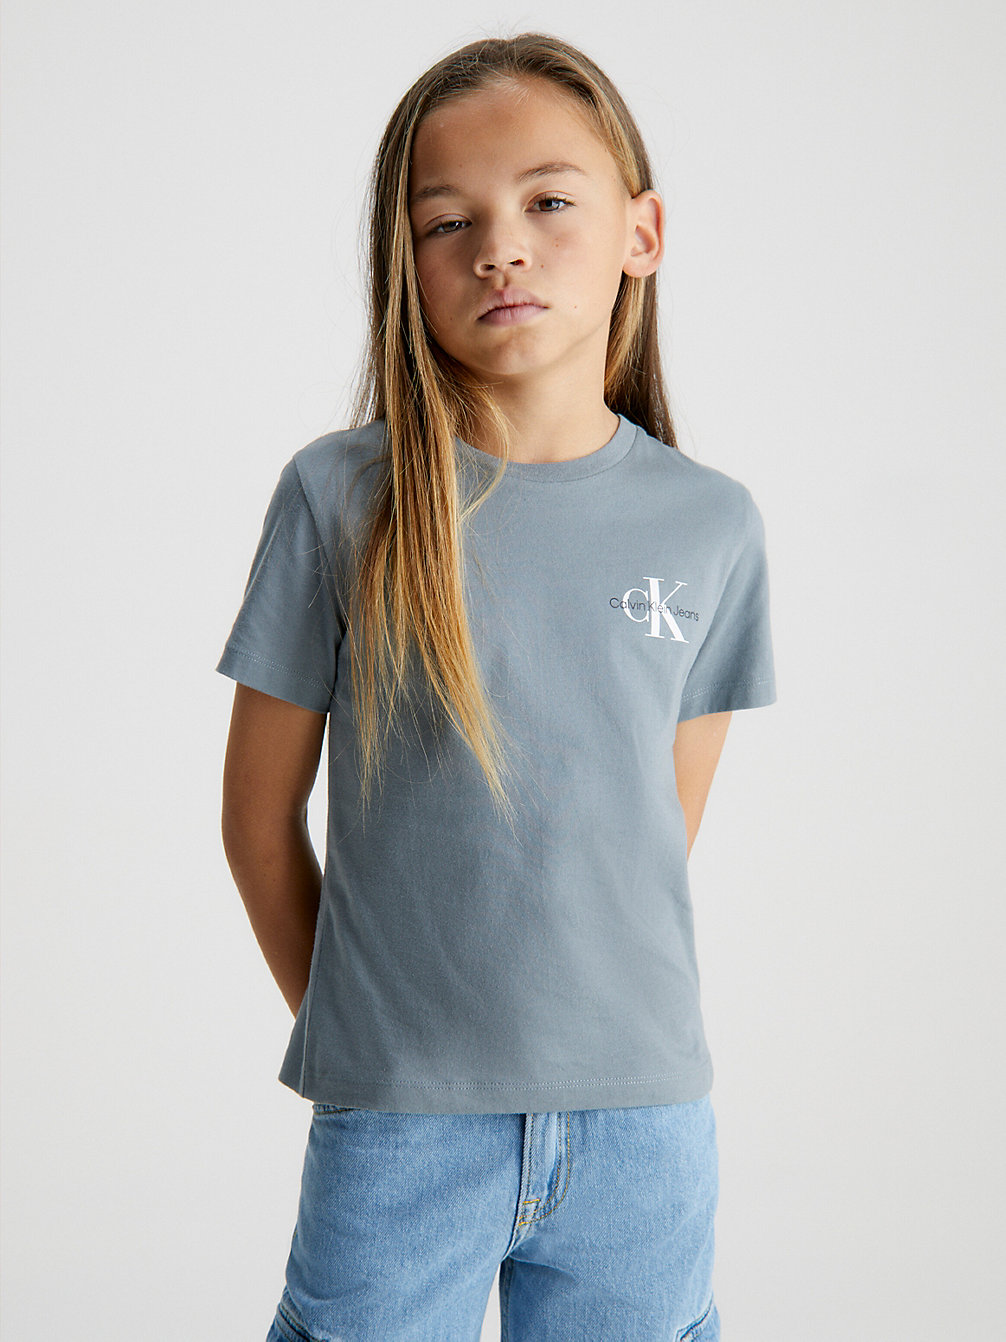 OVERCAST GREY T-Shirt En Coton Bio undefined boys Calvin Klein